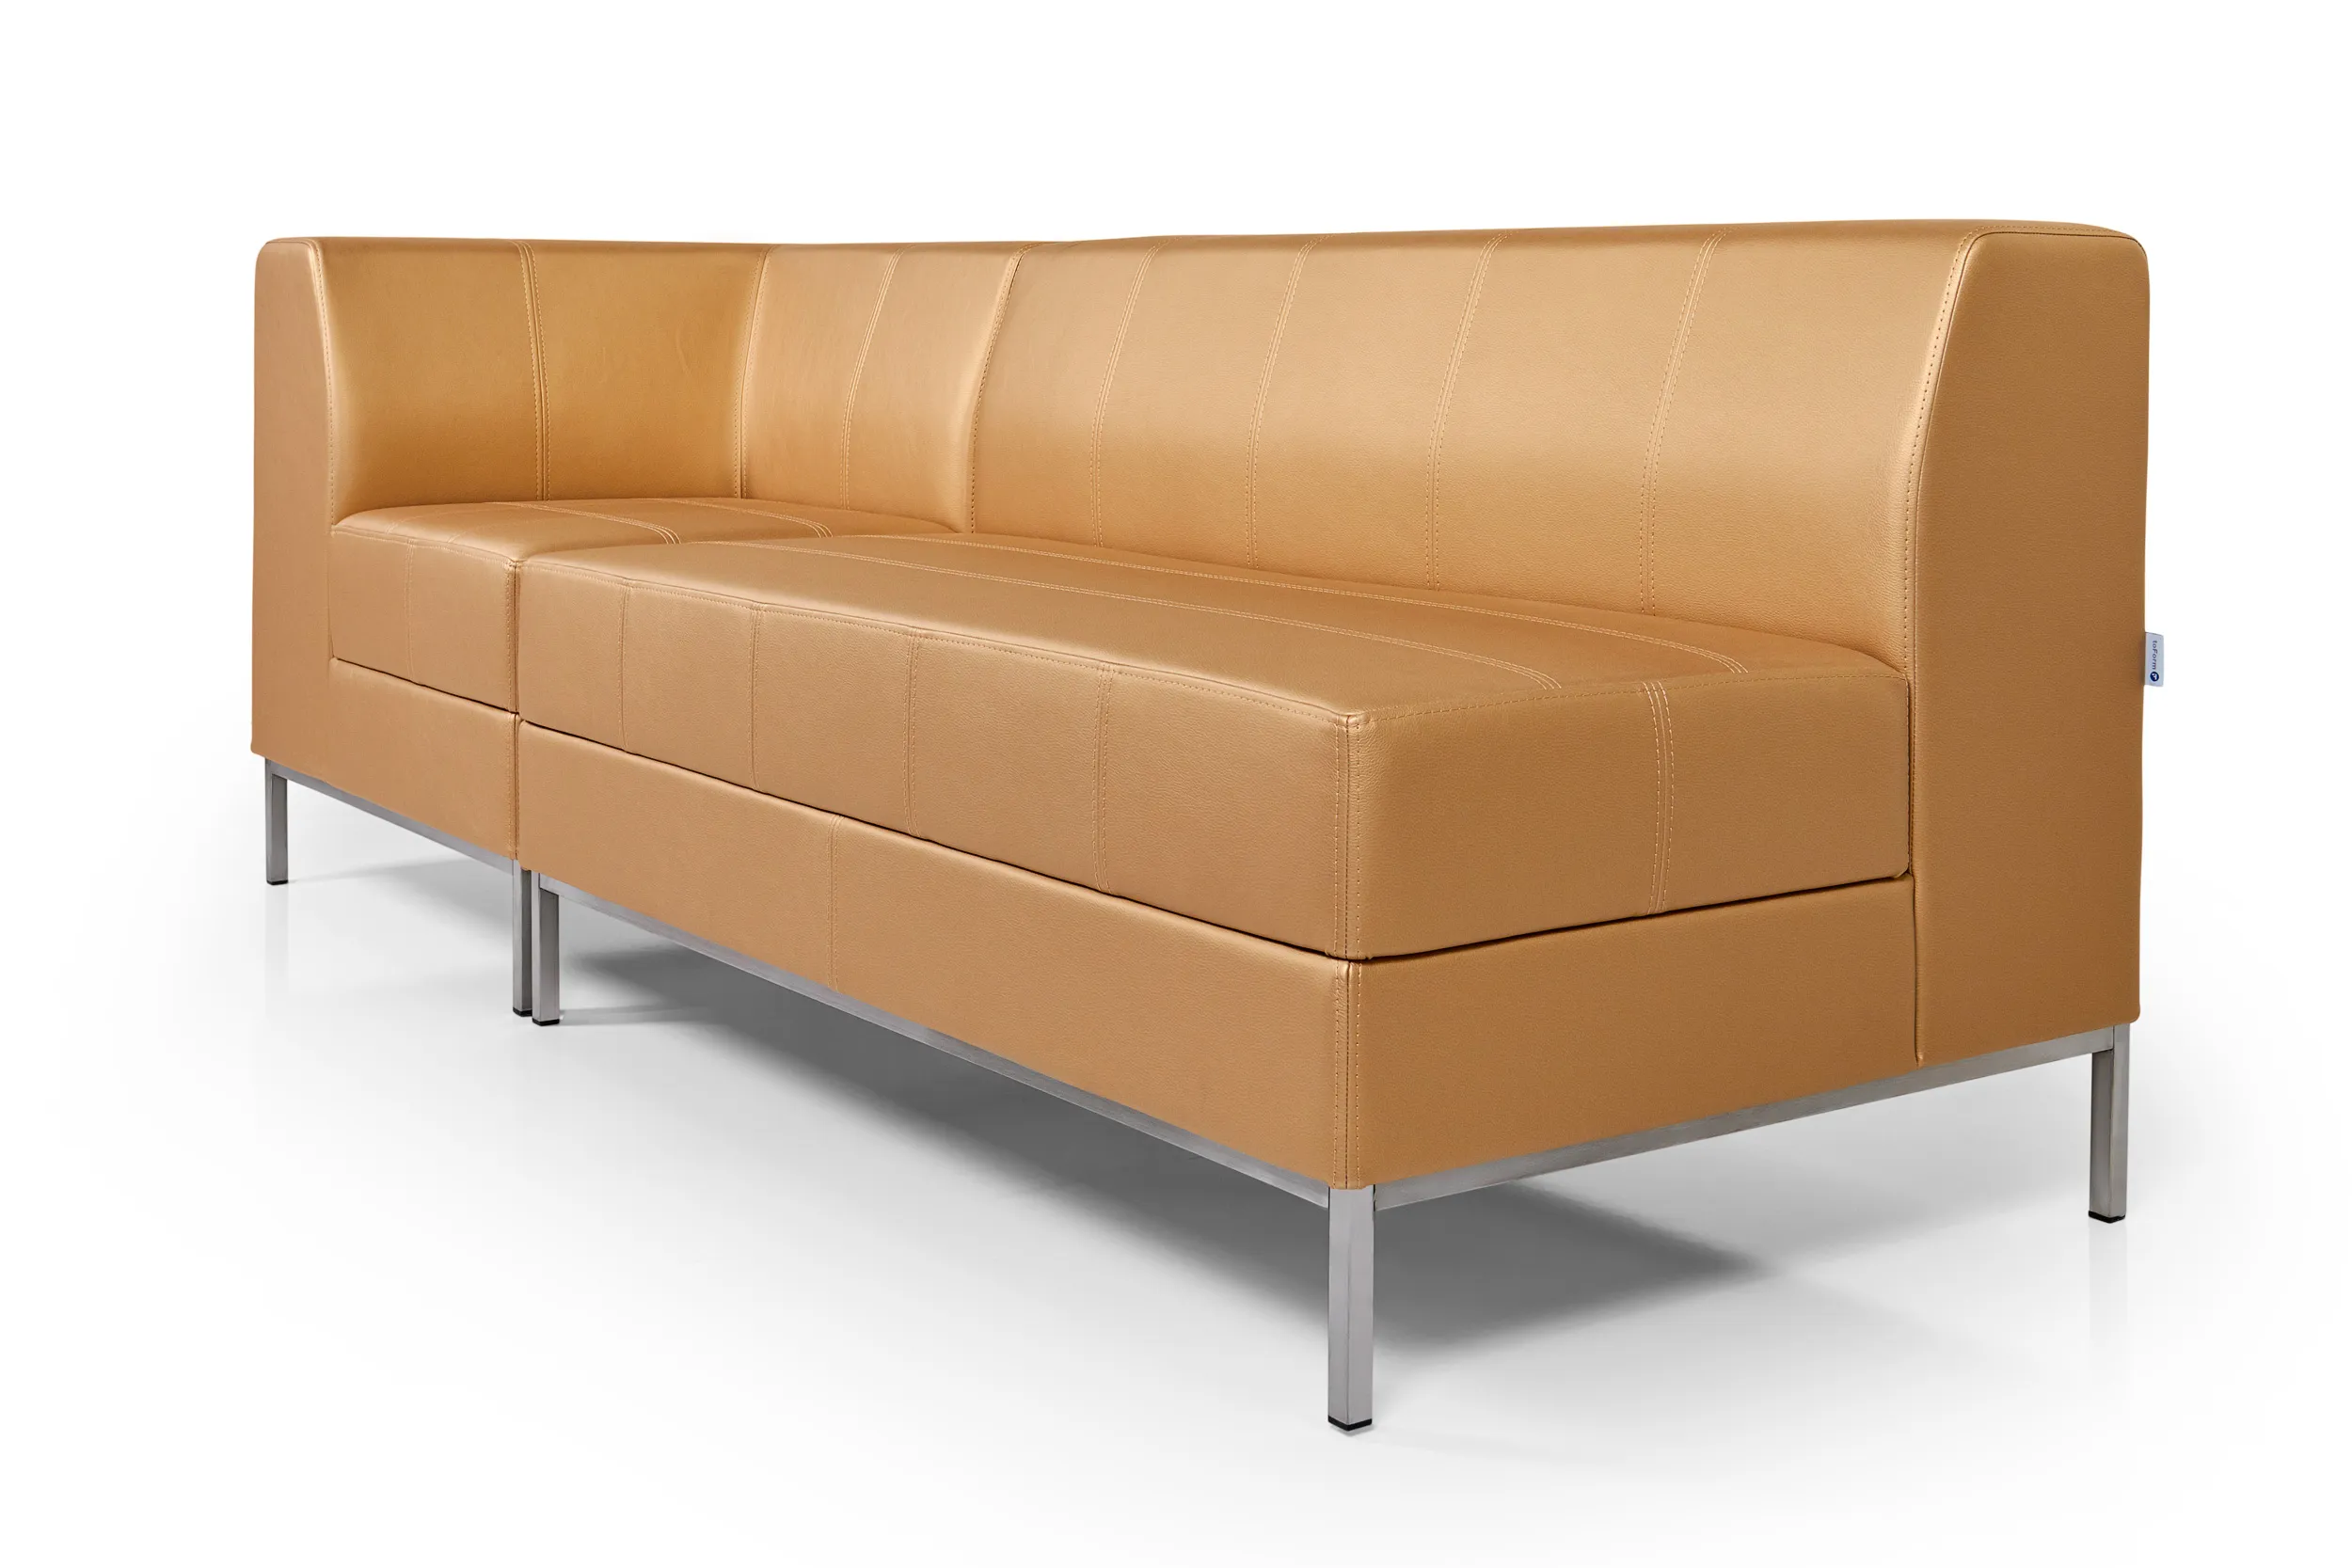 Модульный офисный диван toForm М9 Style connection